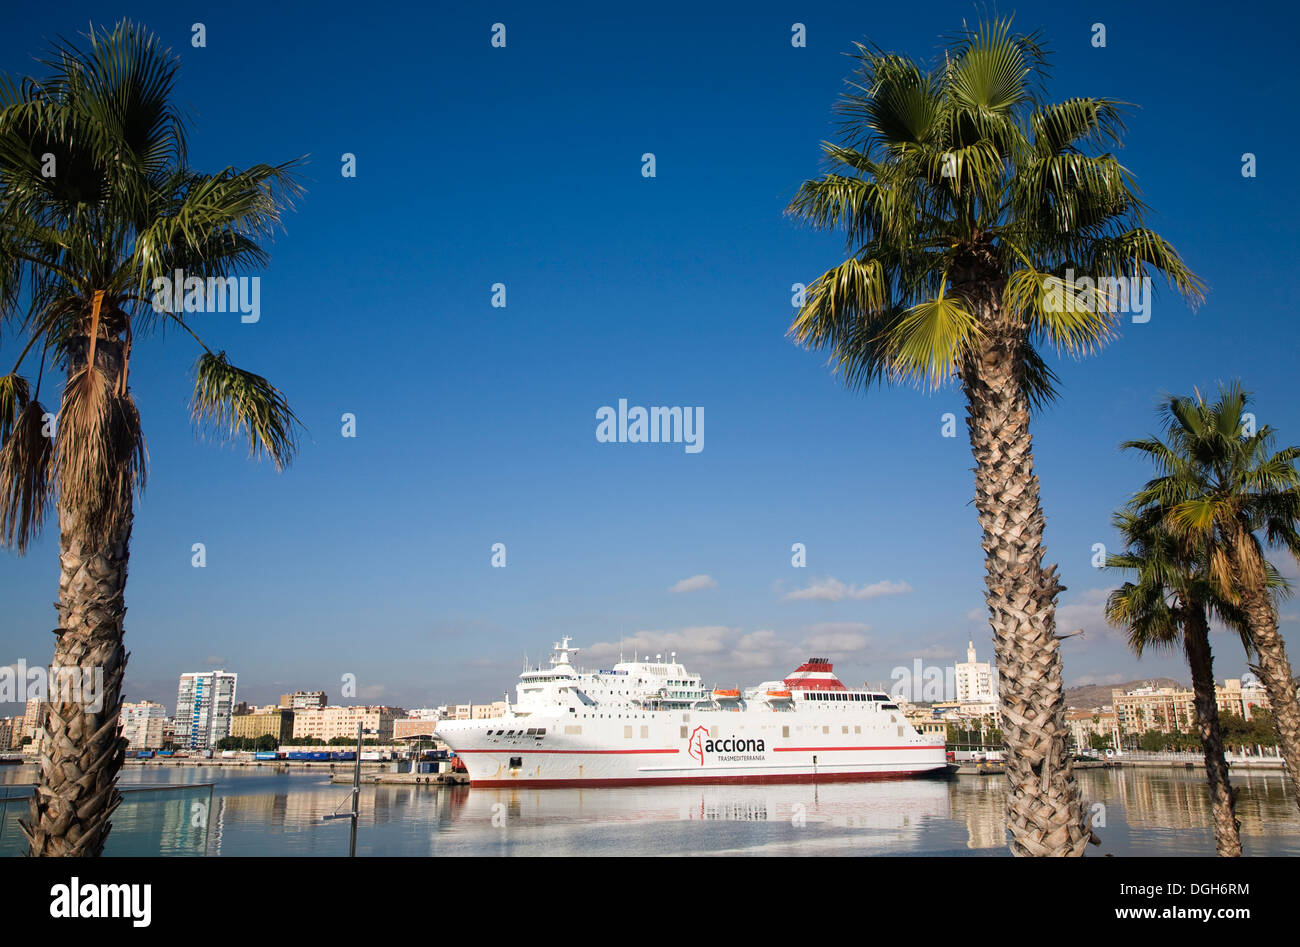 Blick durch Palmen, Acciona Fähre Schiff Malaga Spanien Stockfoto